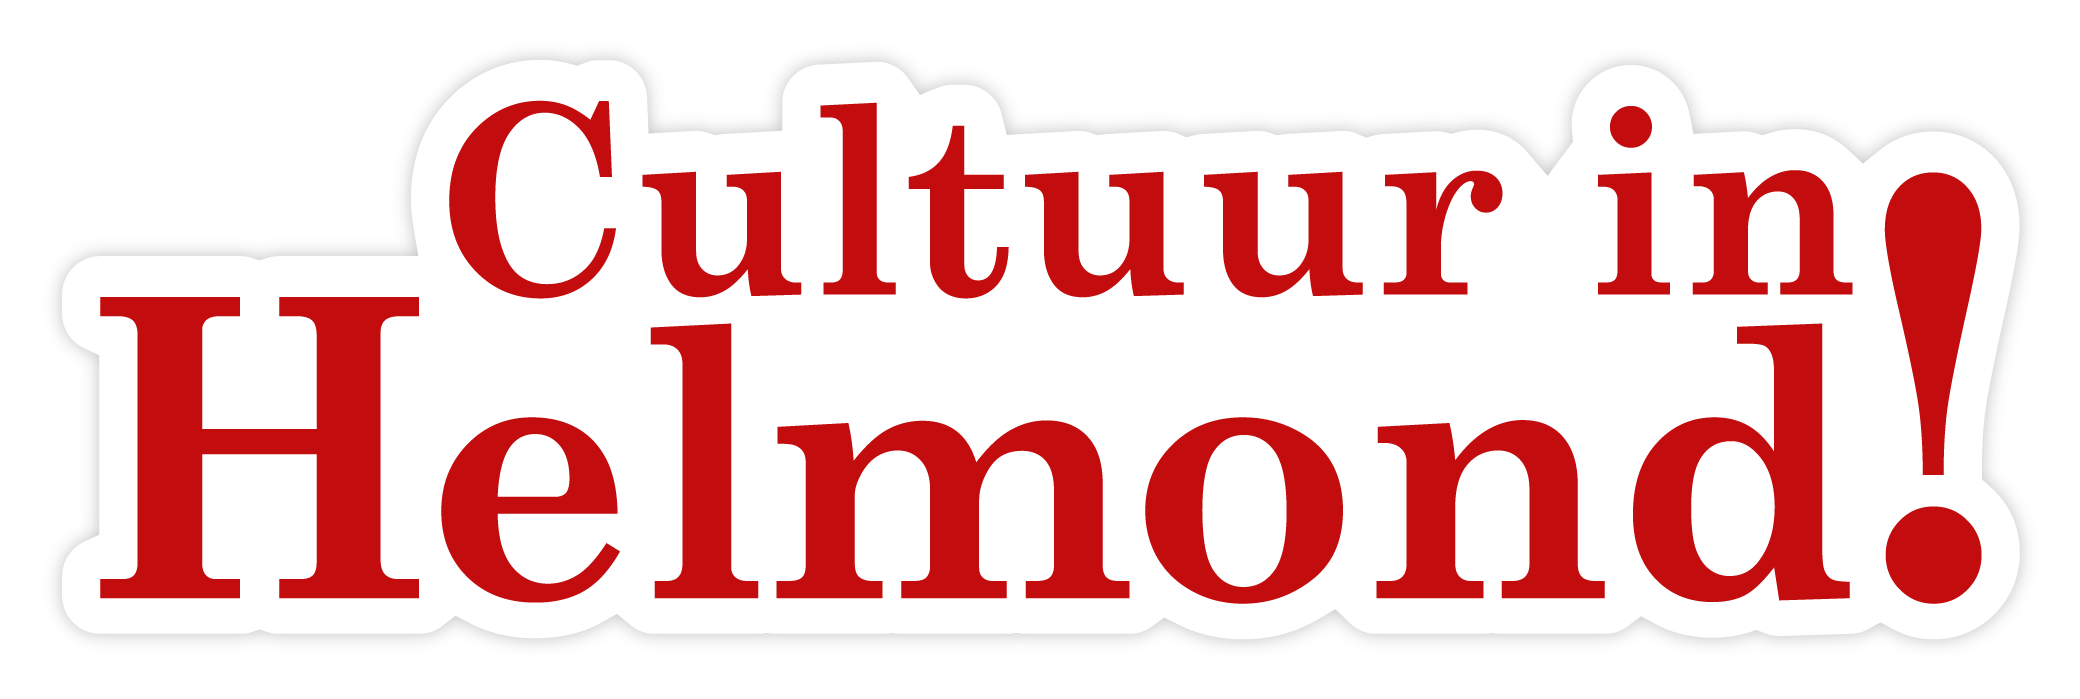 Stichting Cultuur in Helmond